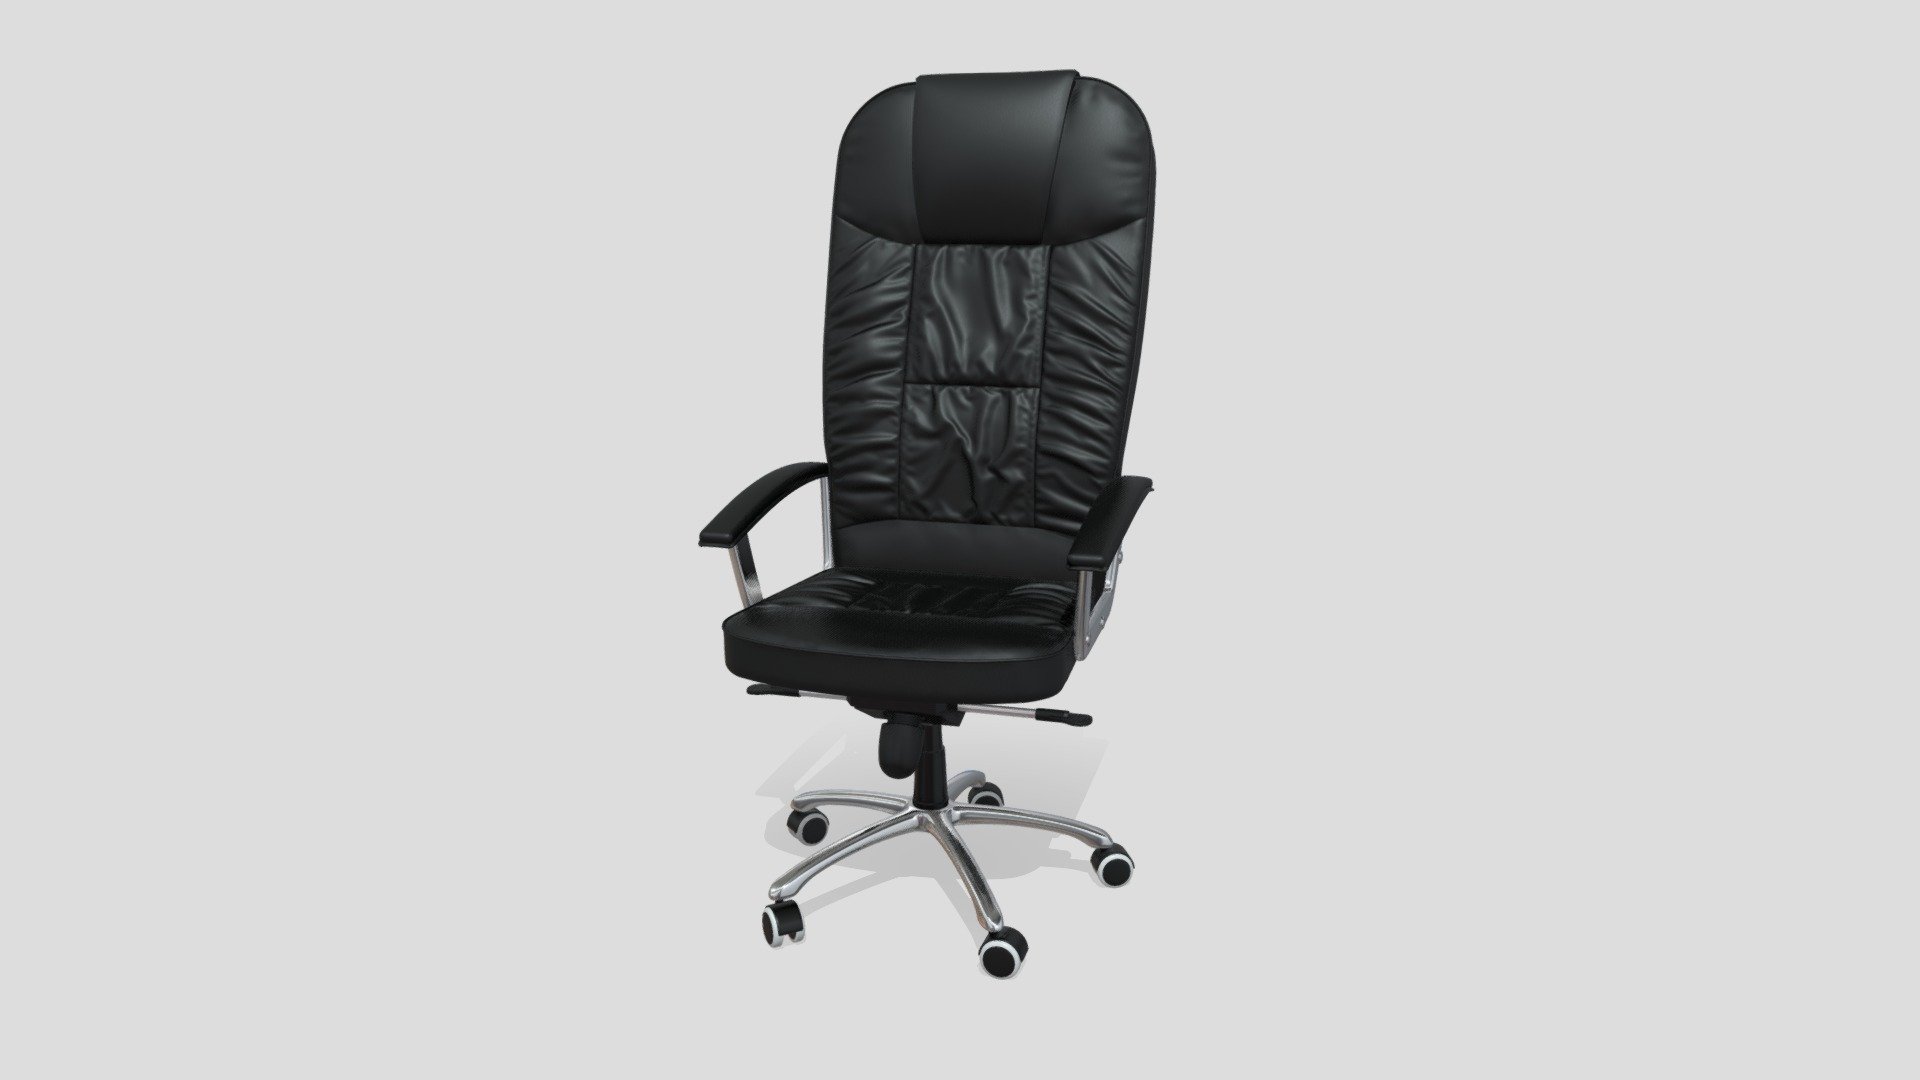 Tall backrest leather office armchair on castor wheels.

Modeled using Blender and Marvelous Designer 3d model